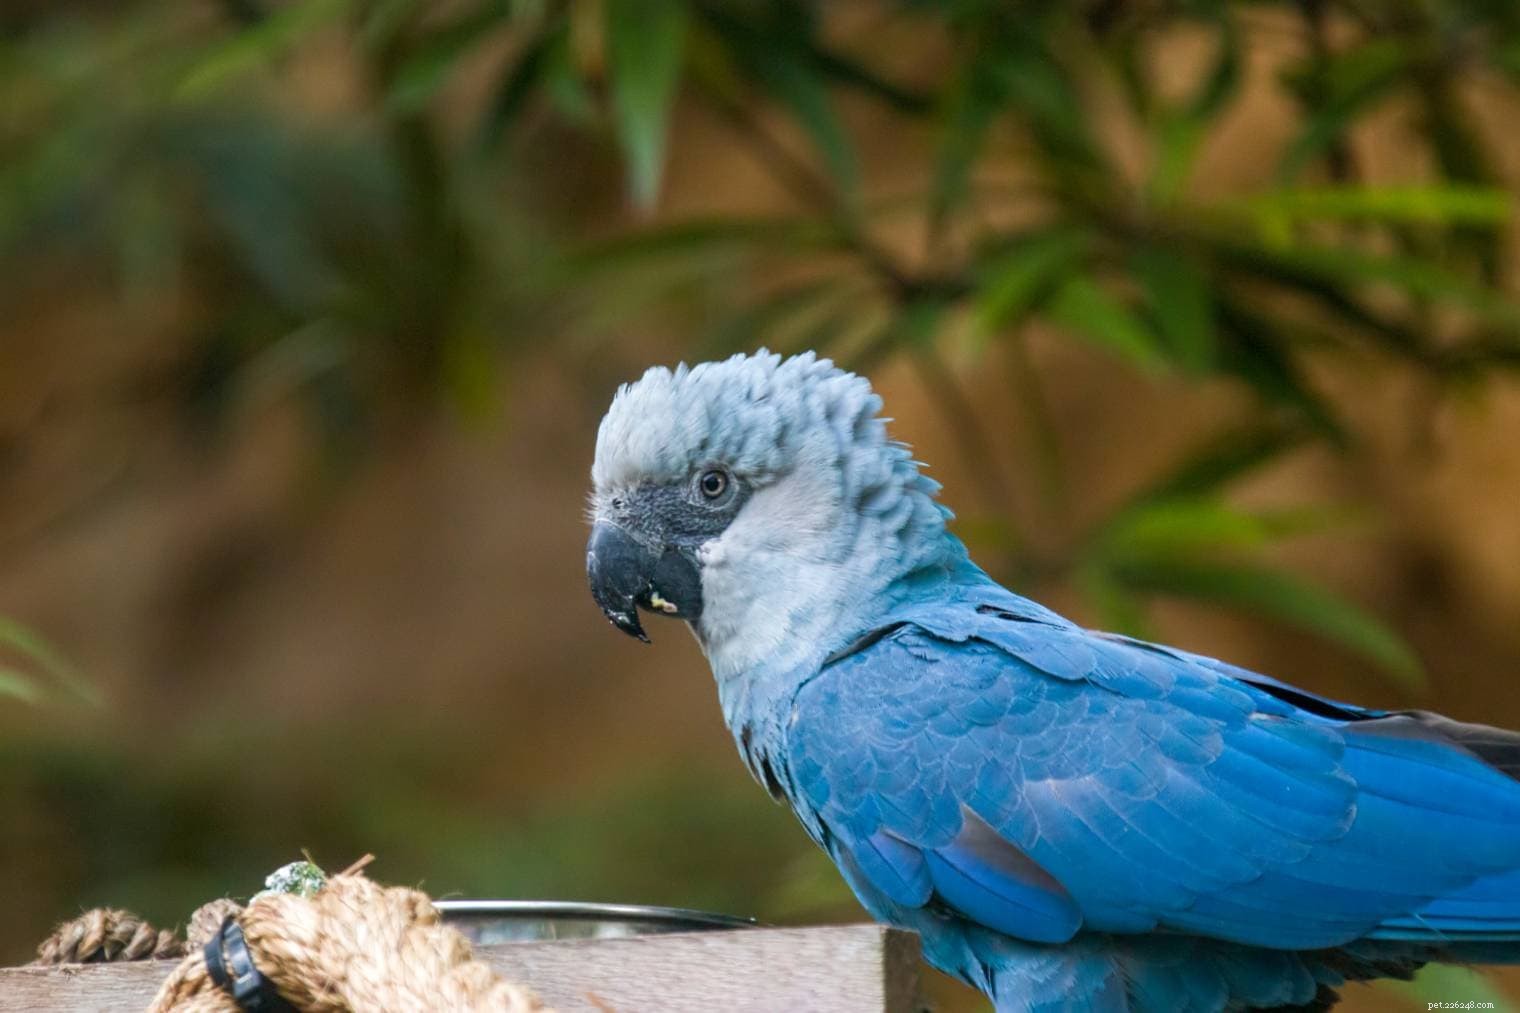 Är Spix’s Macaw utdöd?